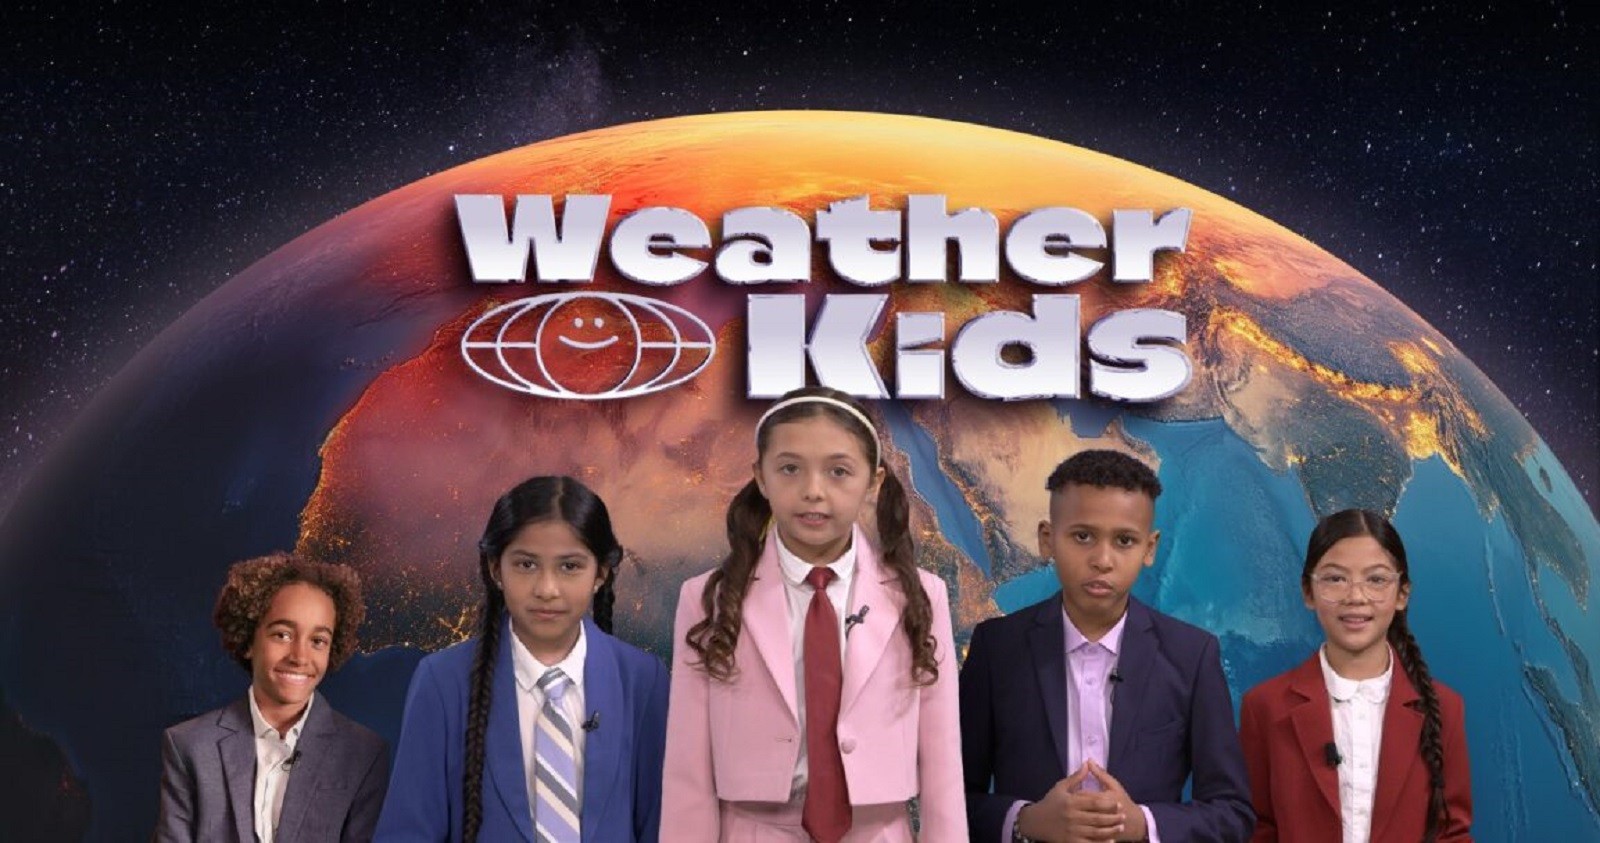 Weather Kids, czyli prognoza pogody z 2050 roku. Oto terapia szokowa dla przyszłych pokoleń